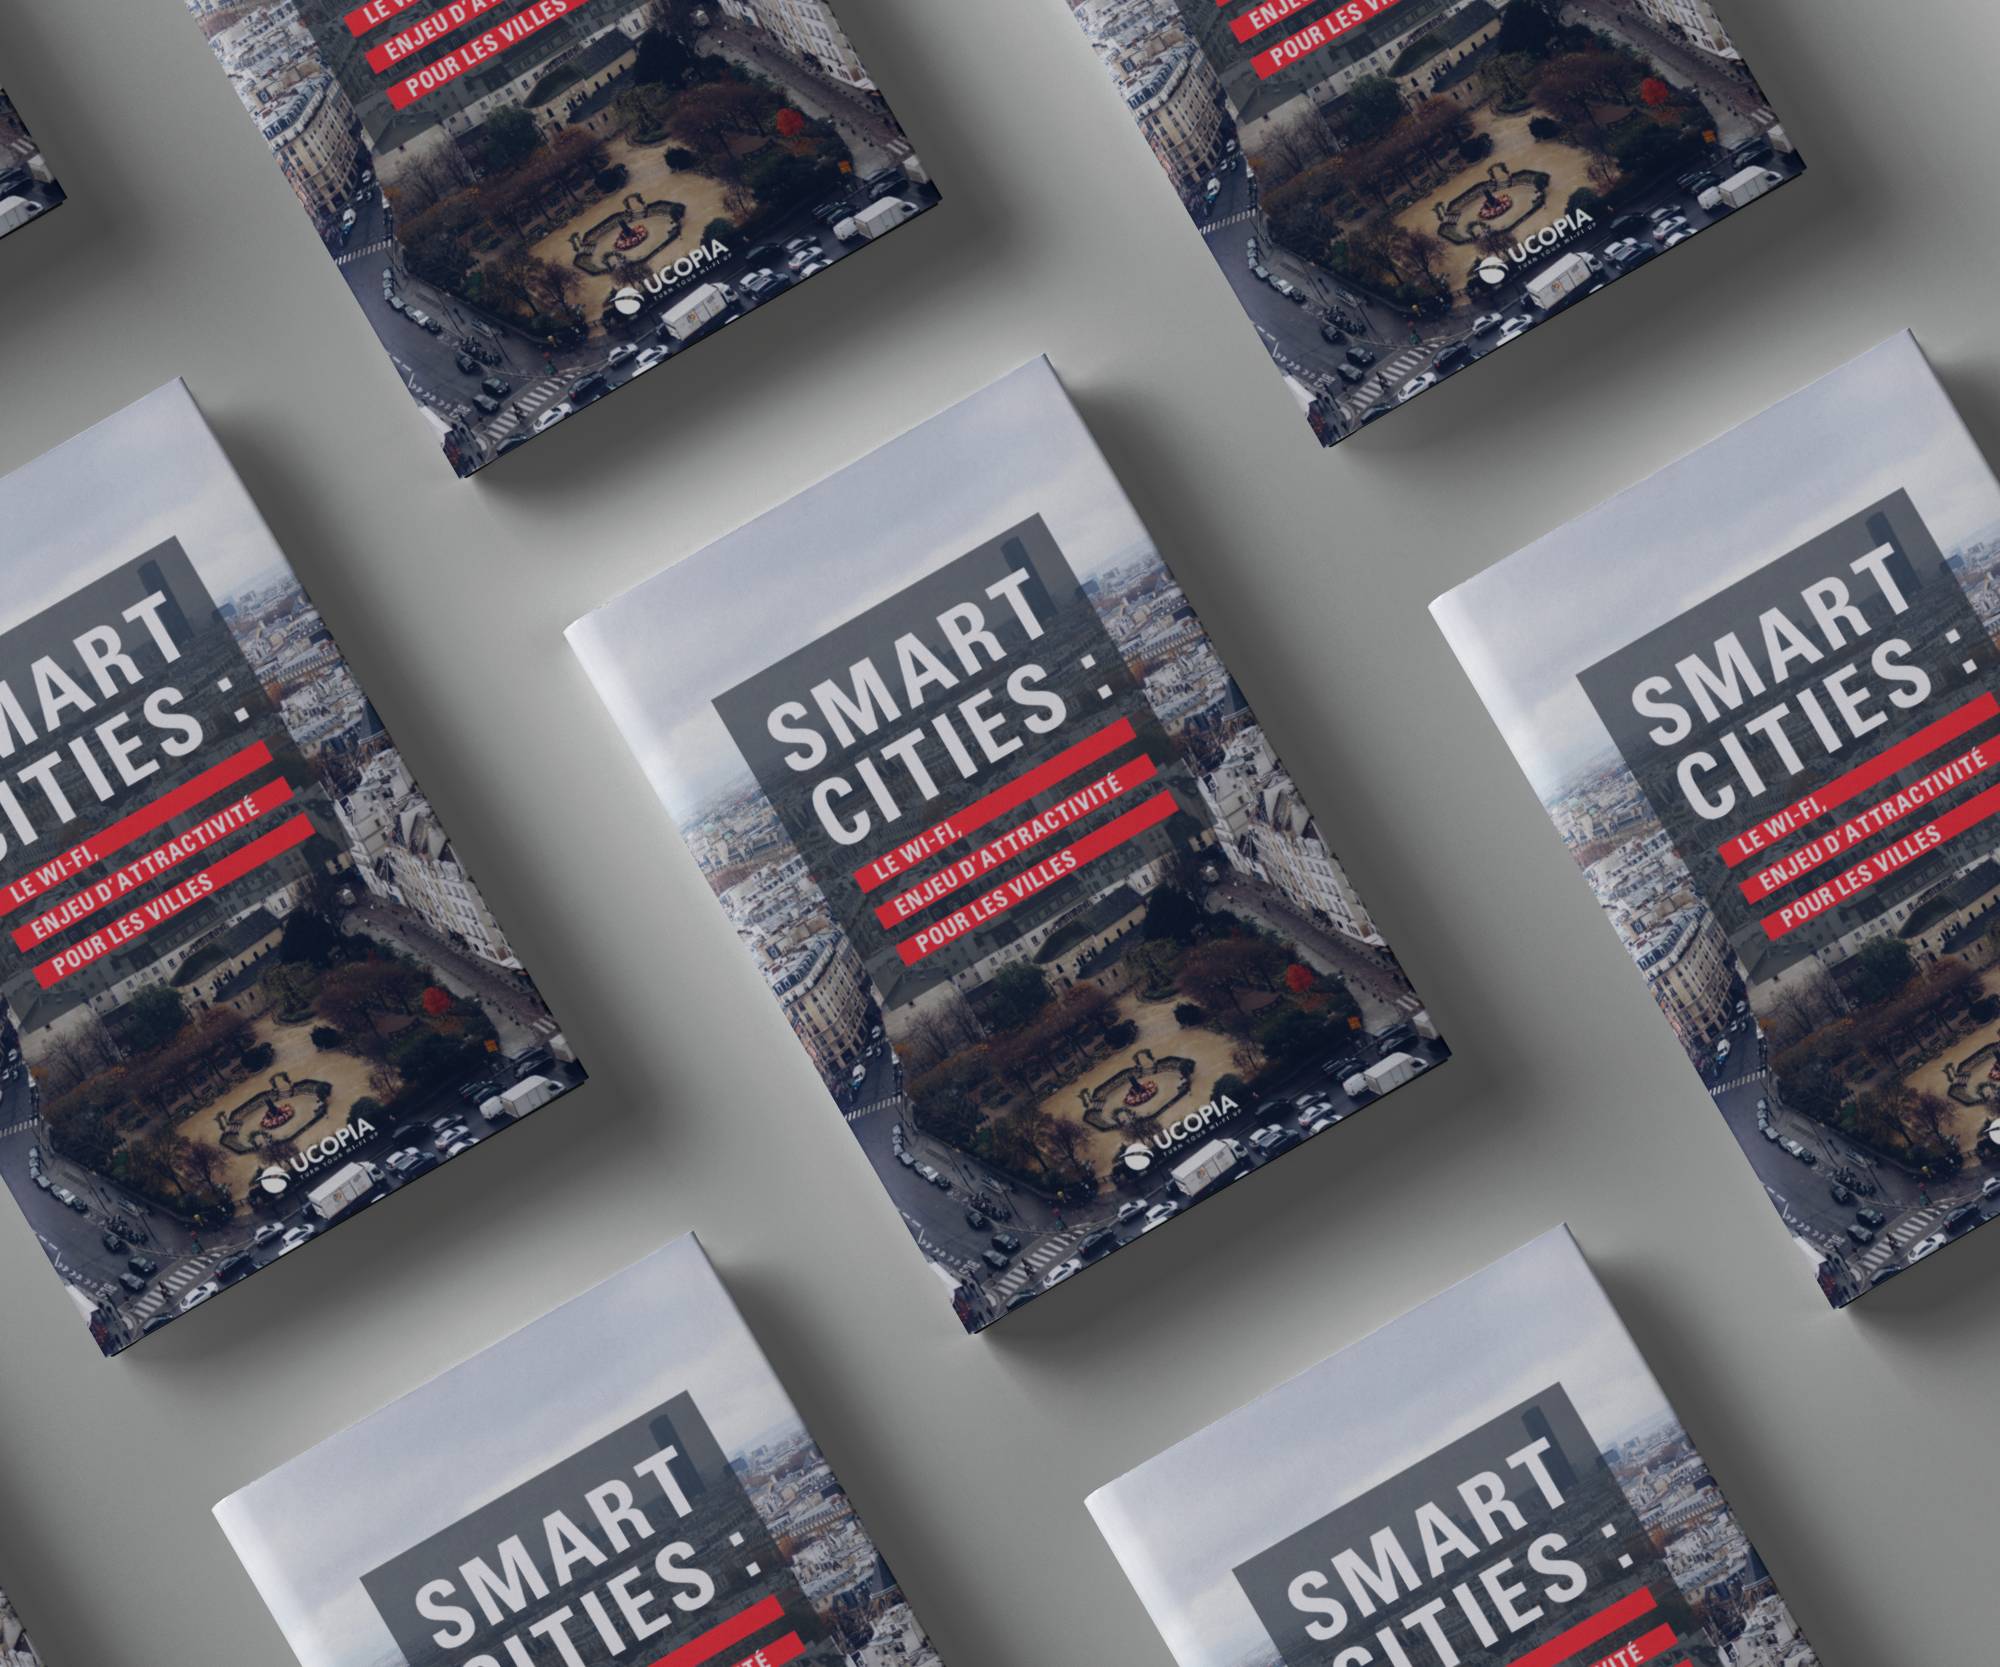 Weißes Buch: Das attraktive WLAN für die Städte